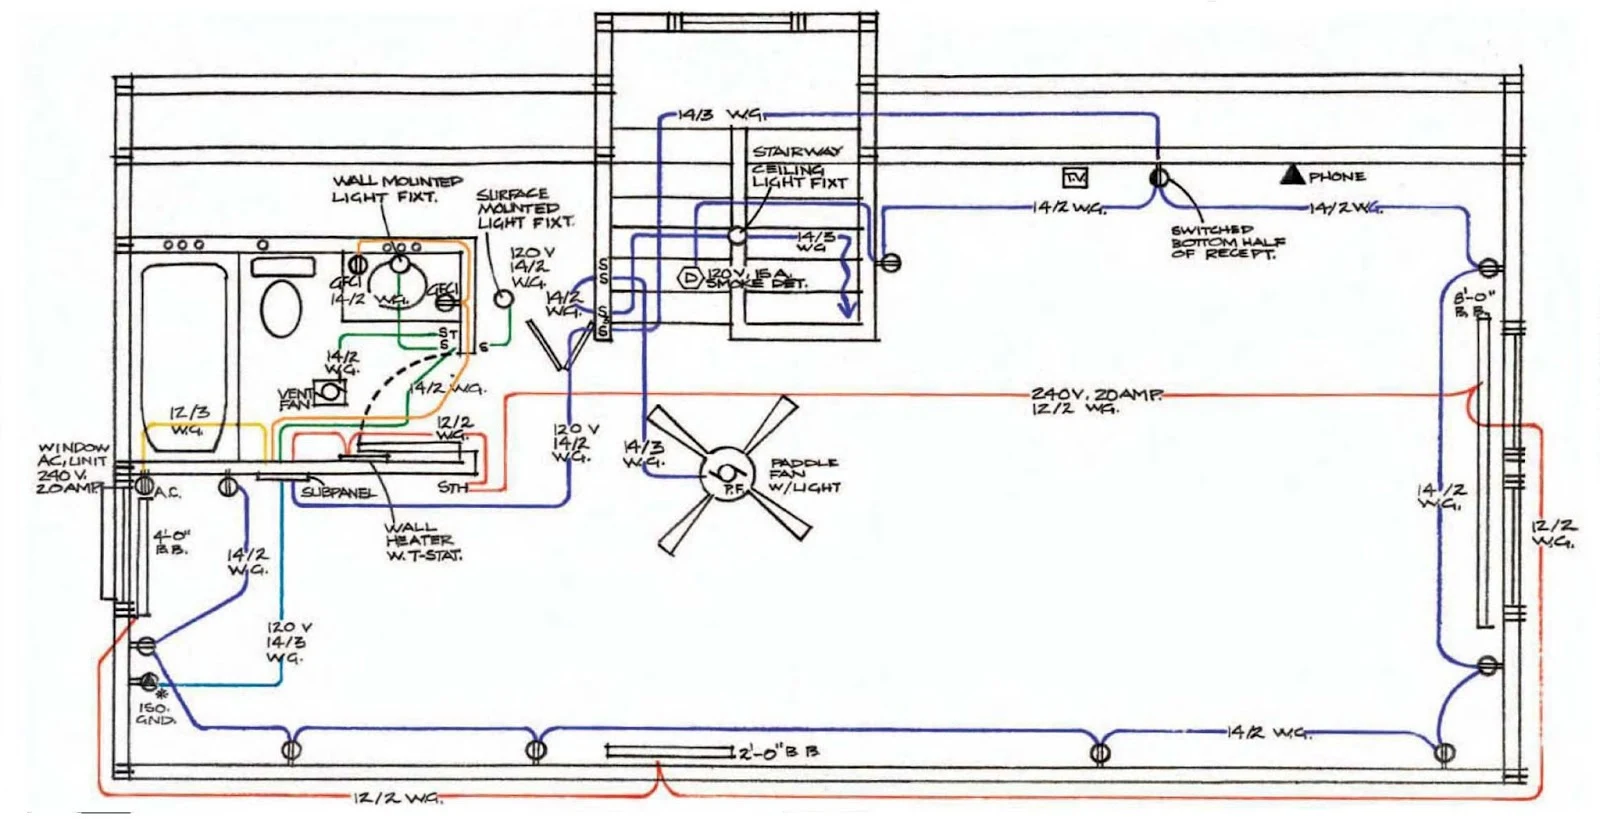 Instalaciones eléctricas residenciales - Diagrama de ampliación de instalación eléctrica en un ático